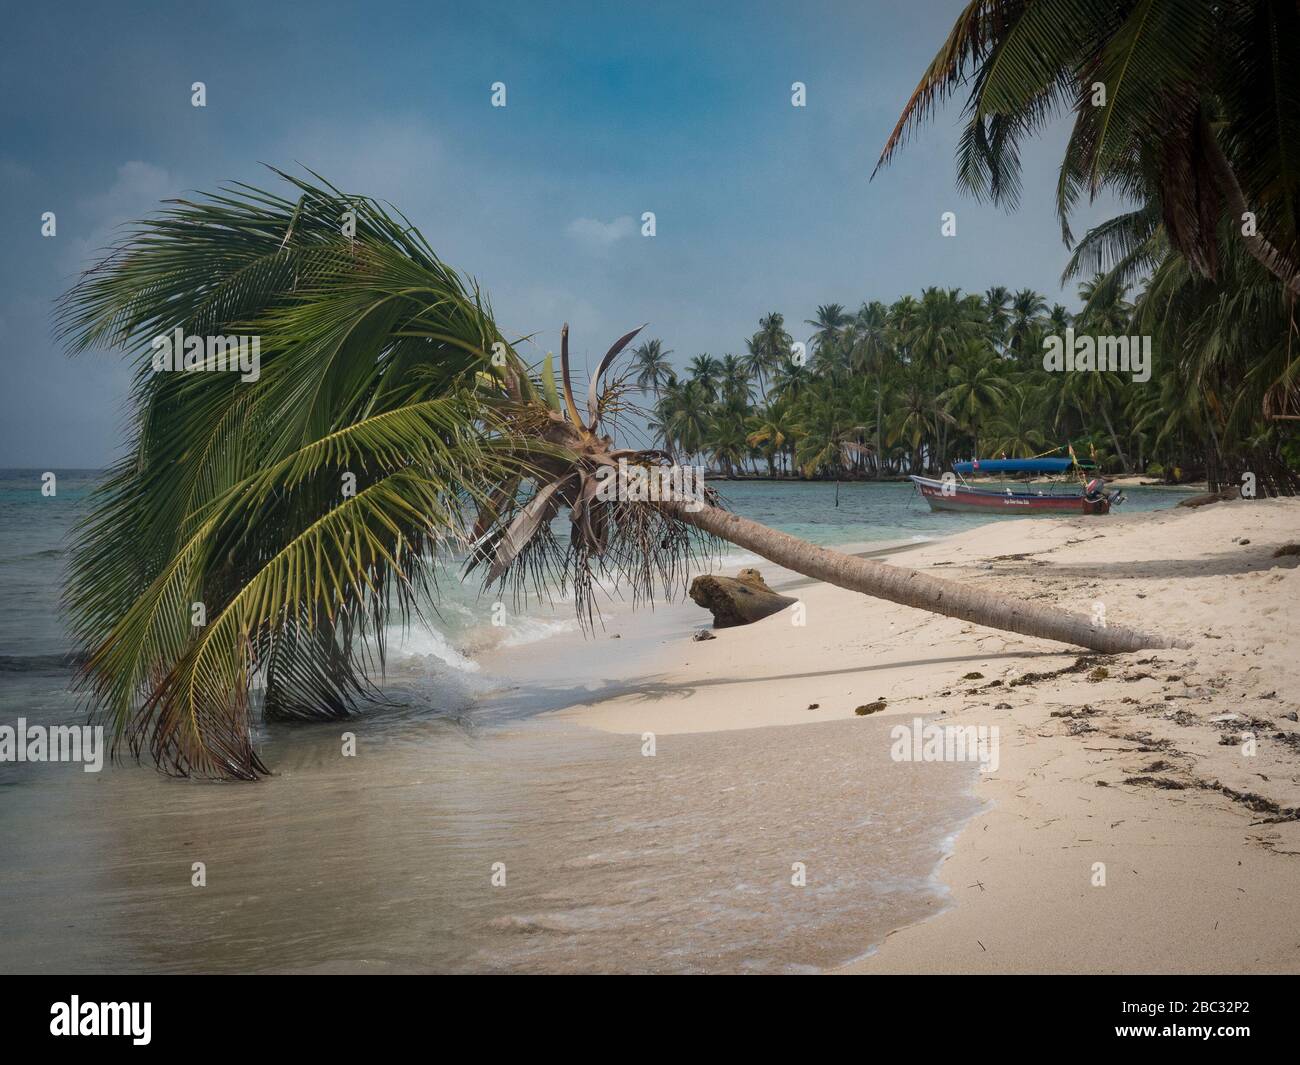 Un palmier solo s'accroche au doux surf sur une île des caraïbes au large du Panama. Un petit bateau de pêche repose à la distance sur le sable blanc. Banque D'Images